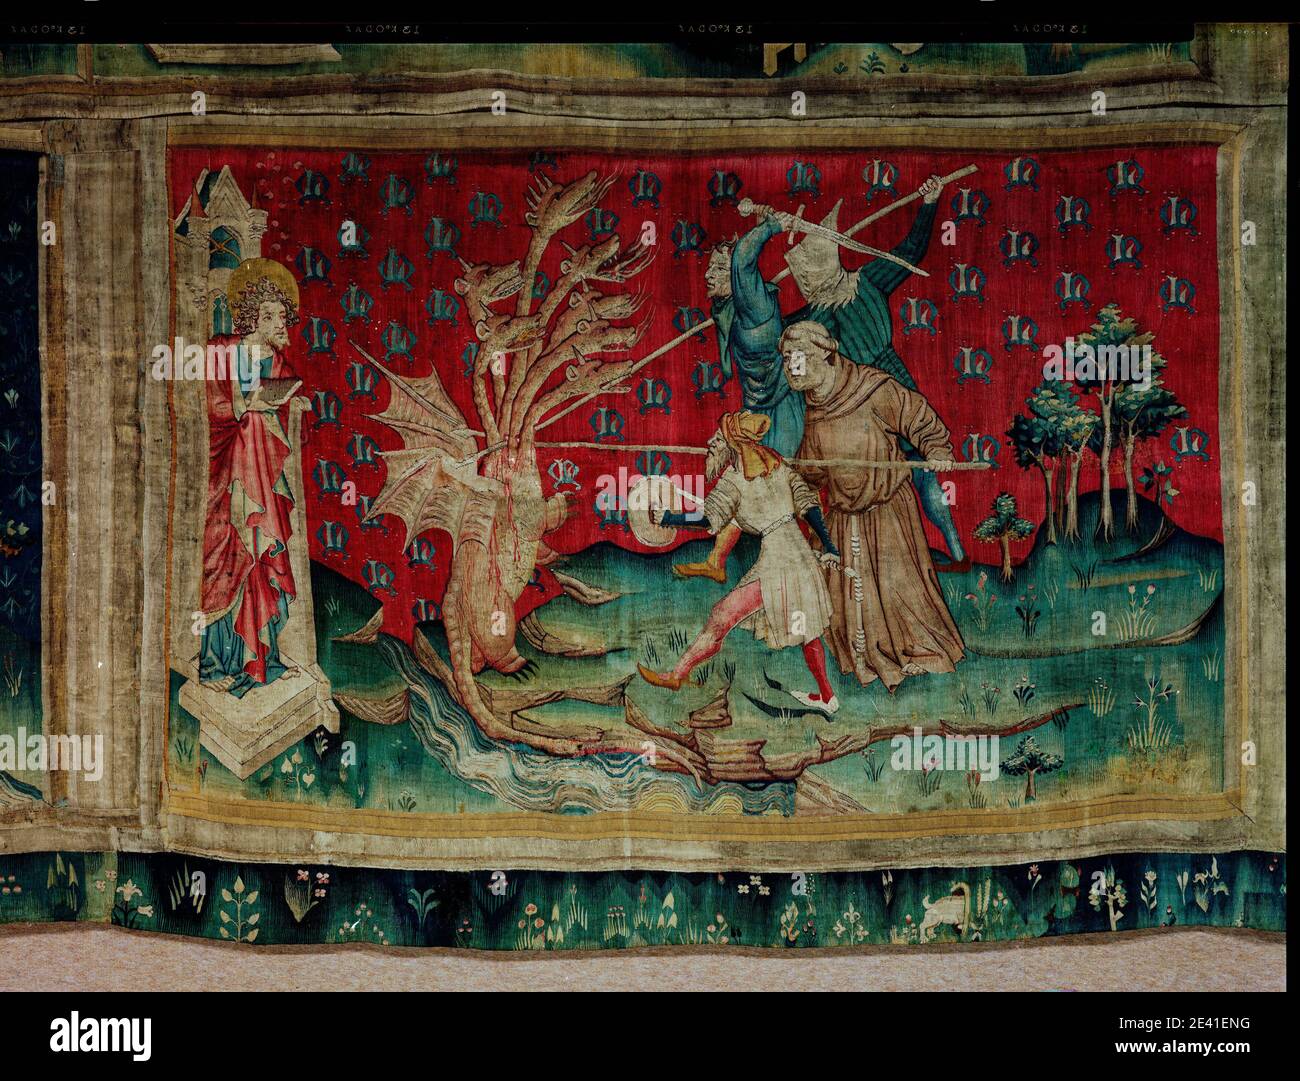 La Tenture de l'Apocalypse d'Angers, le Dragon Combat les serviteurs de Dieu (1,54 x 2,36 m), der Drachen kämpft gegen die Diener Gottes Foto Stock